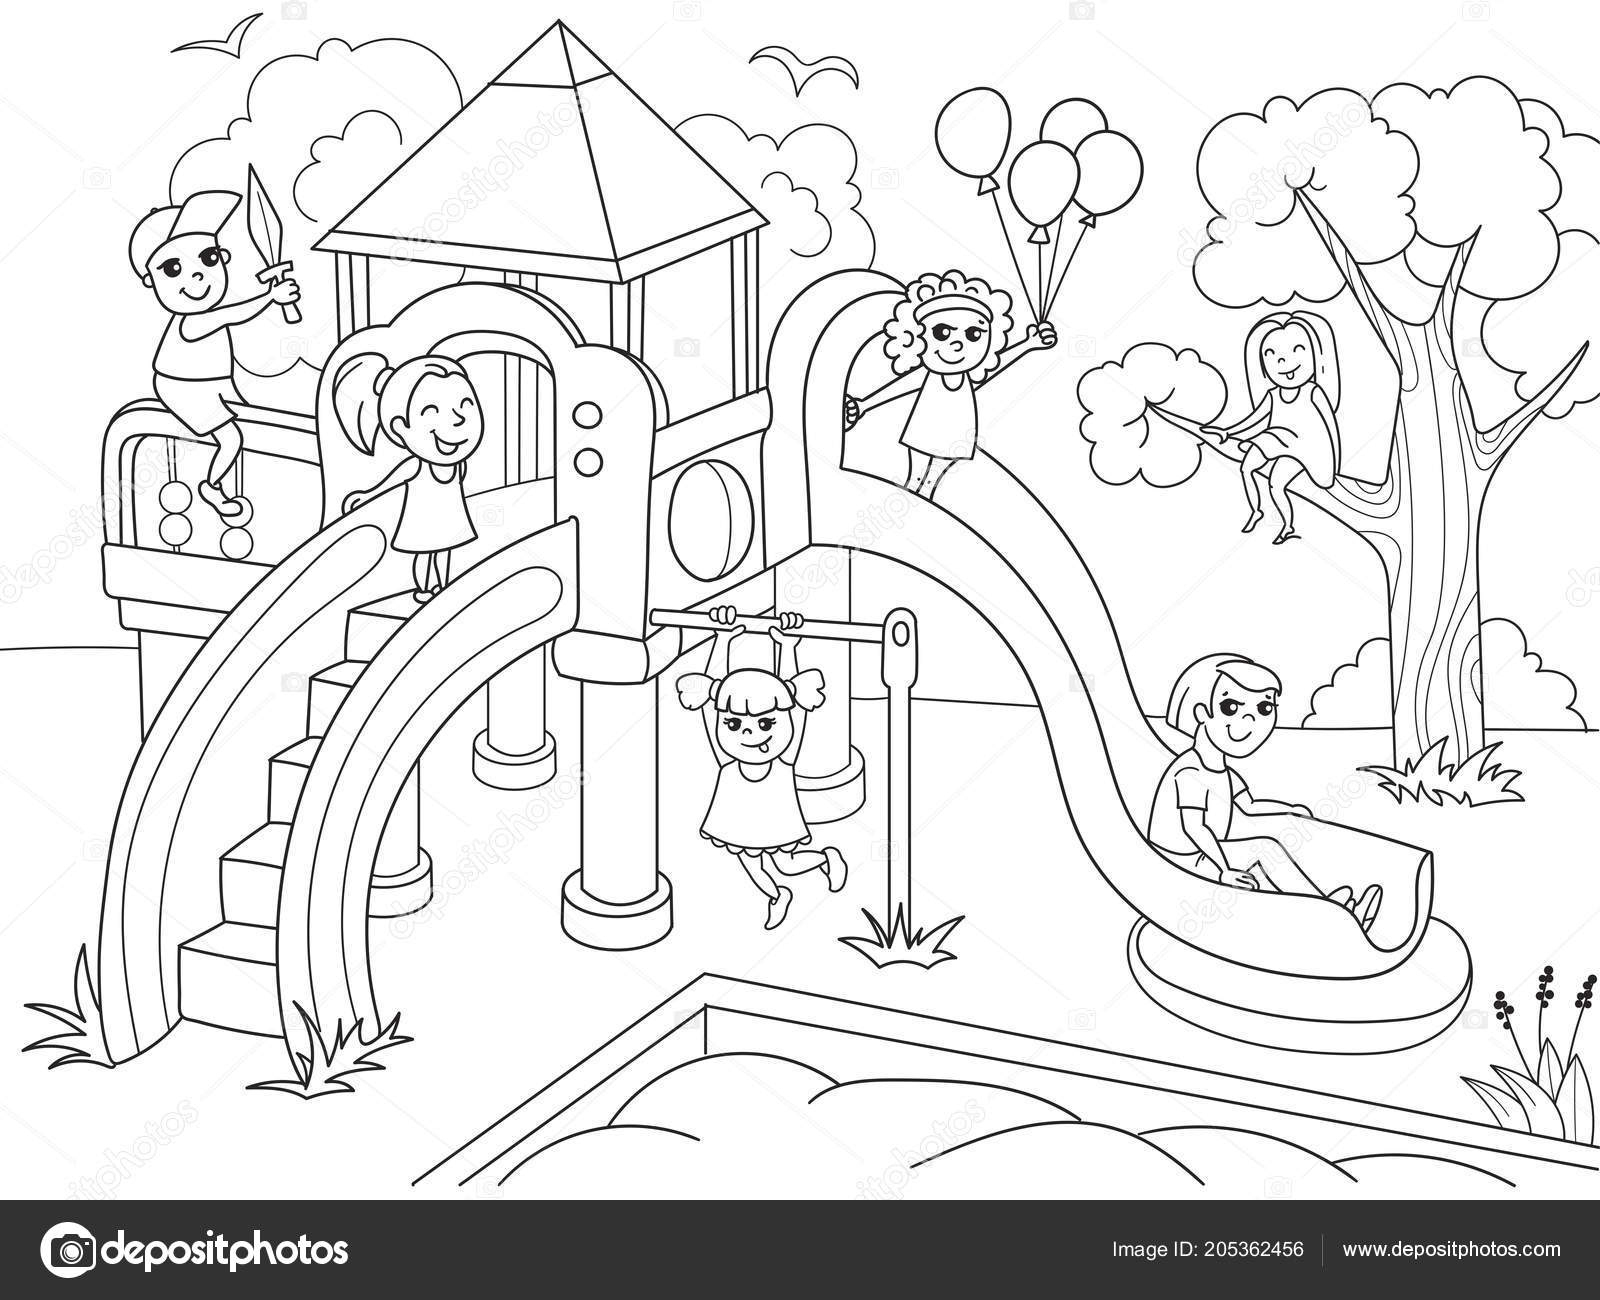 Coloration De L'Aire De Jeux Pour Enfants. Illustration intérieur Jeux Gratuits De Coloriage